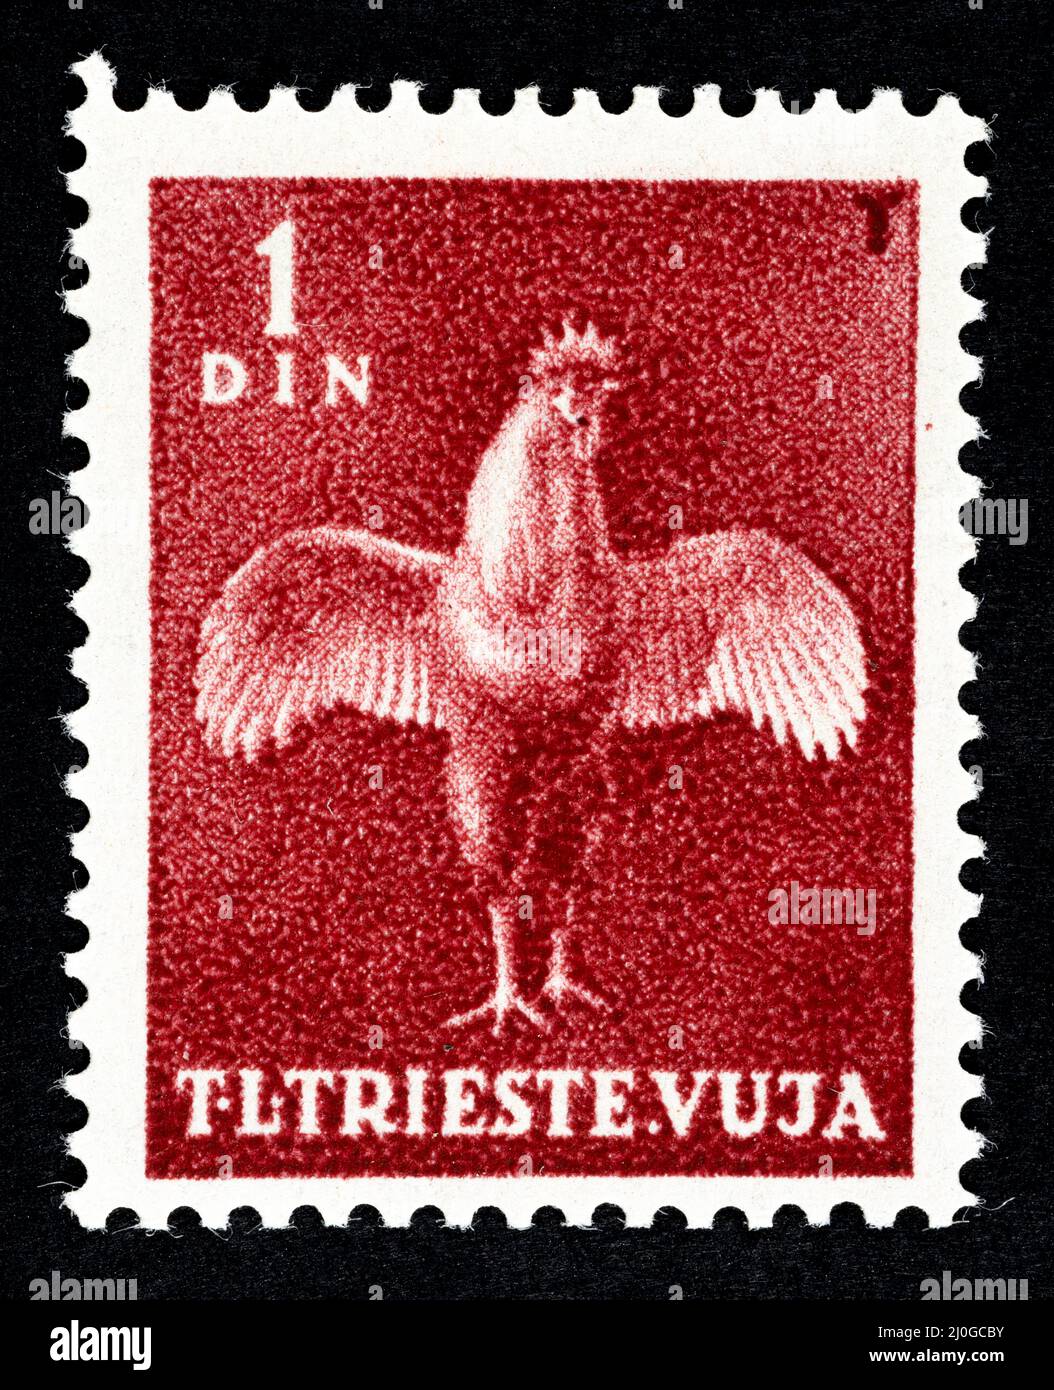 Timbre-poste commémoratif de l'ex-Yougoslavie, surimprimé STT VUJNA, avec illustration du coq du territoire libre de Trieste, zone Banque D'Images